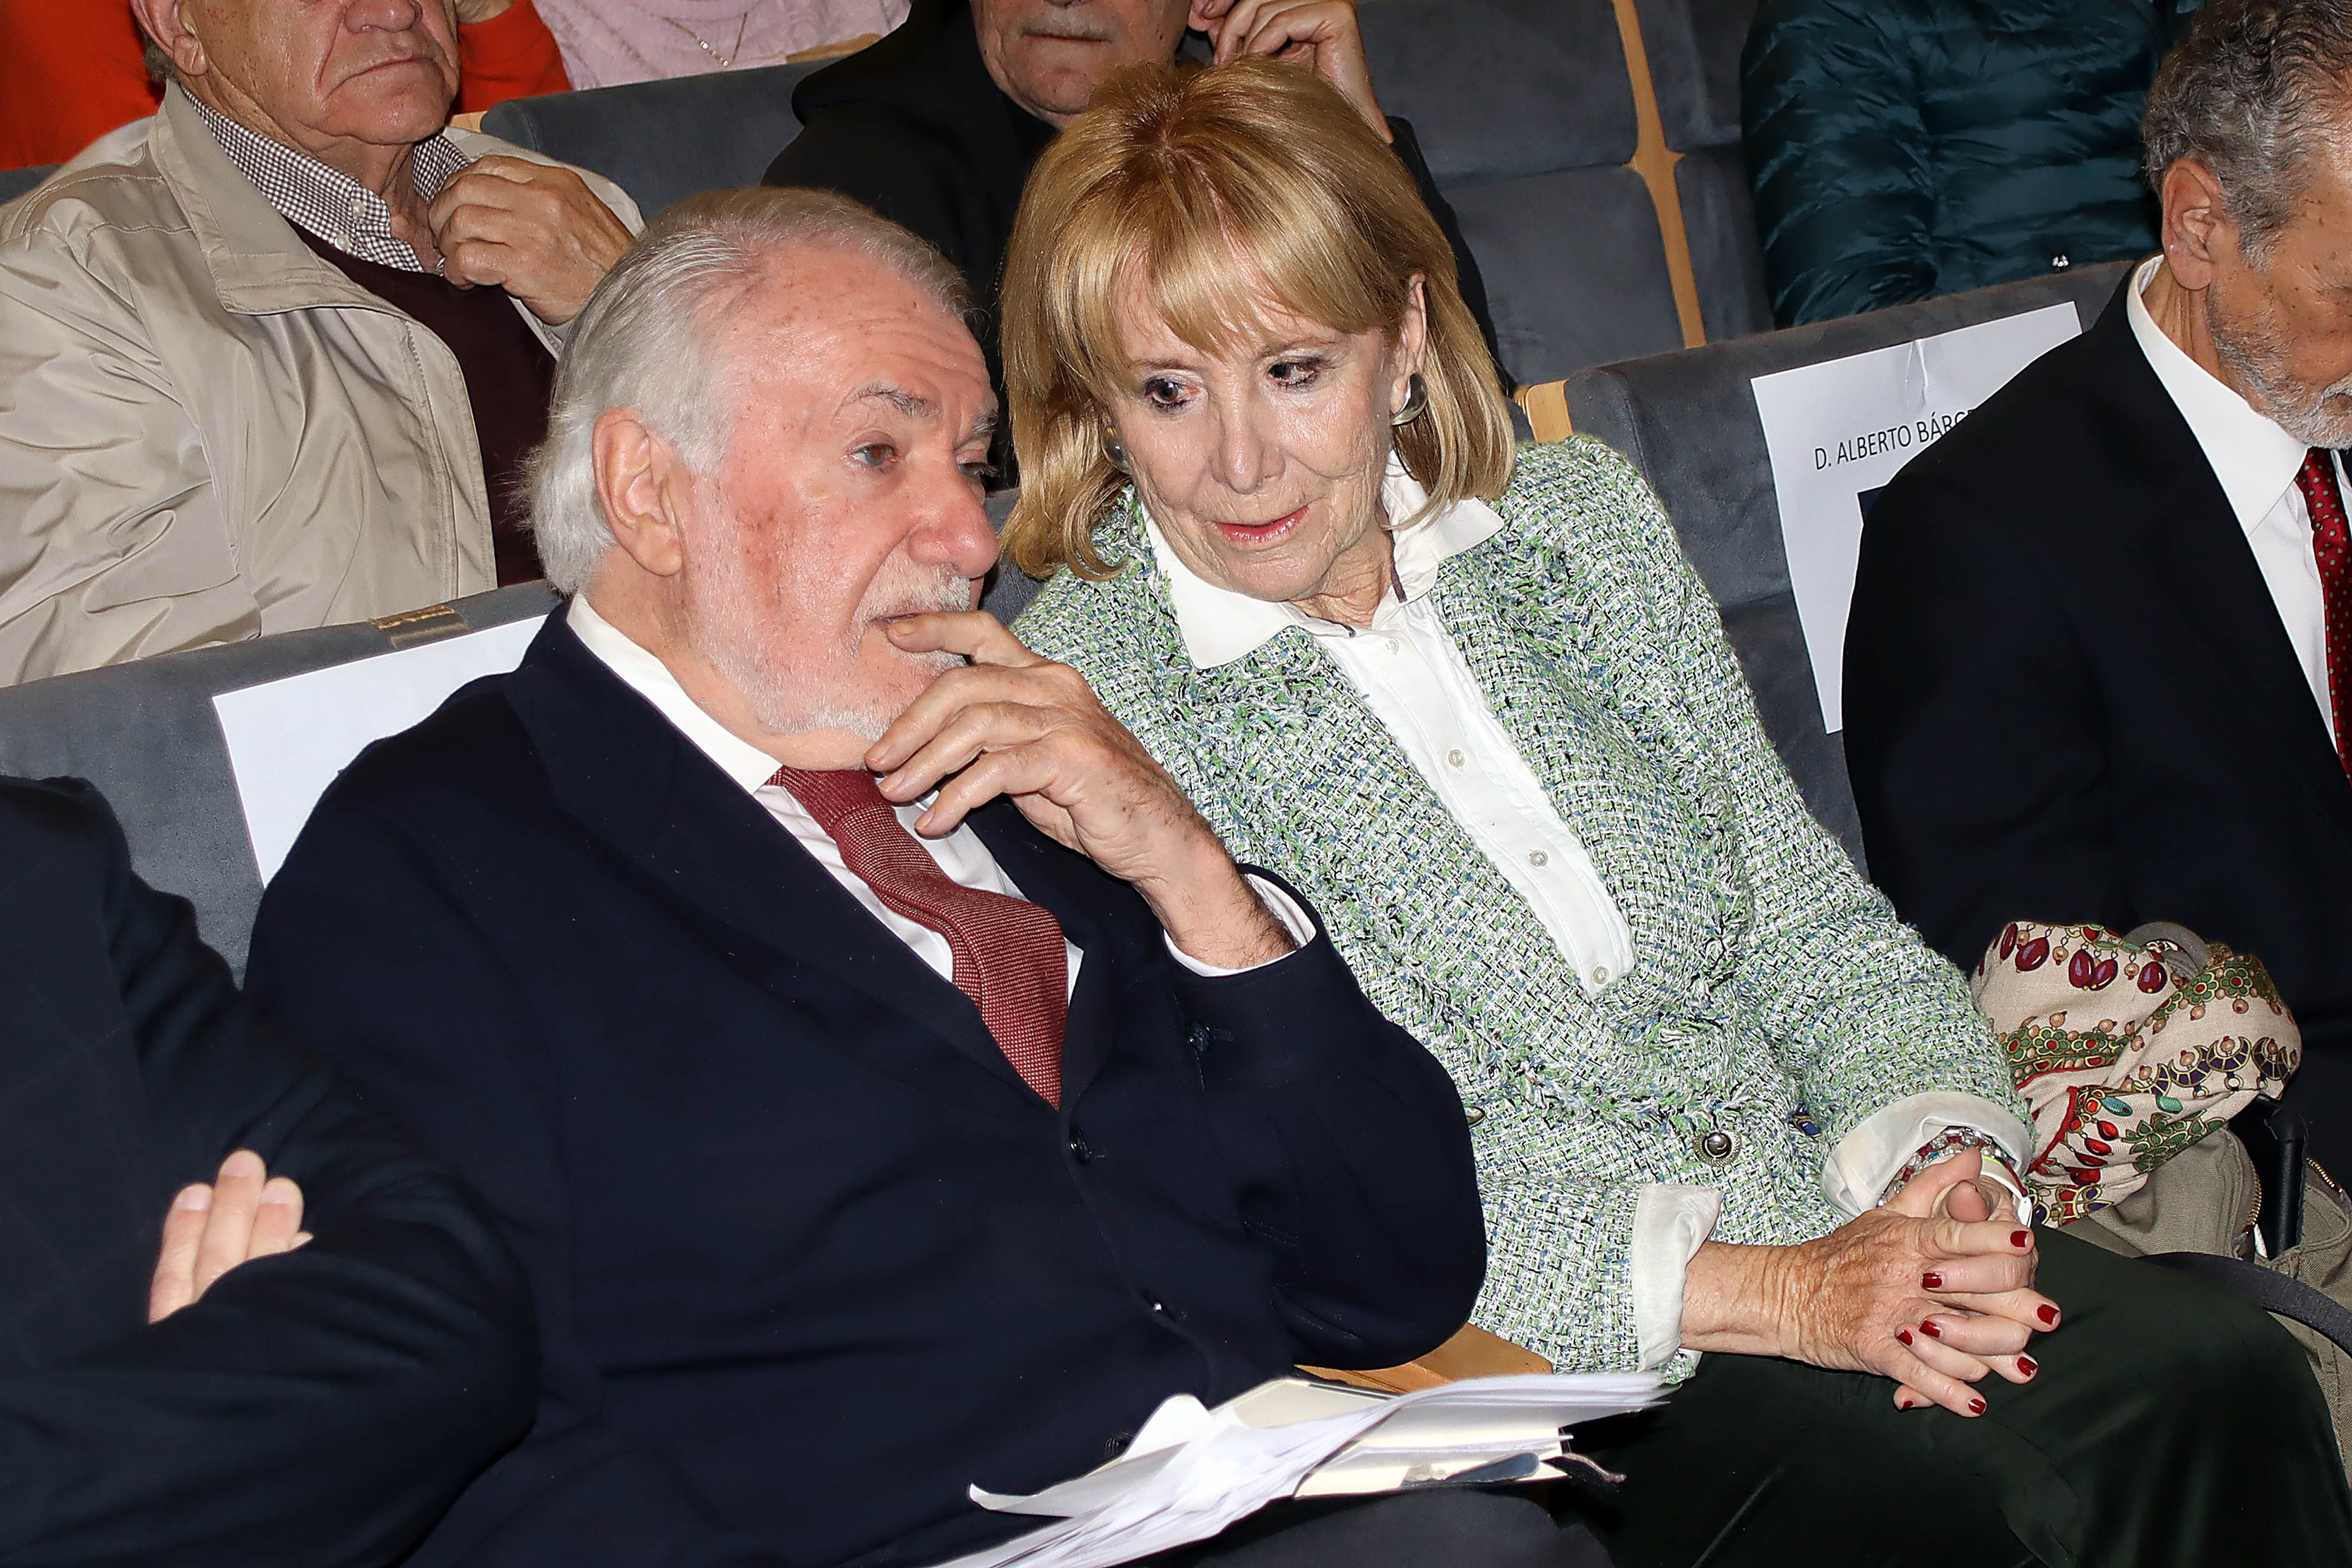 Jaime Mayor Oreja y Esperanza Aguirre en la presentación de la Fundación Neos este lunes en León. | P. GARCÍA (ICAL)